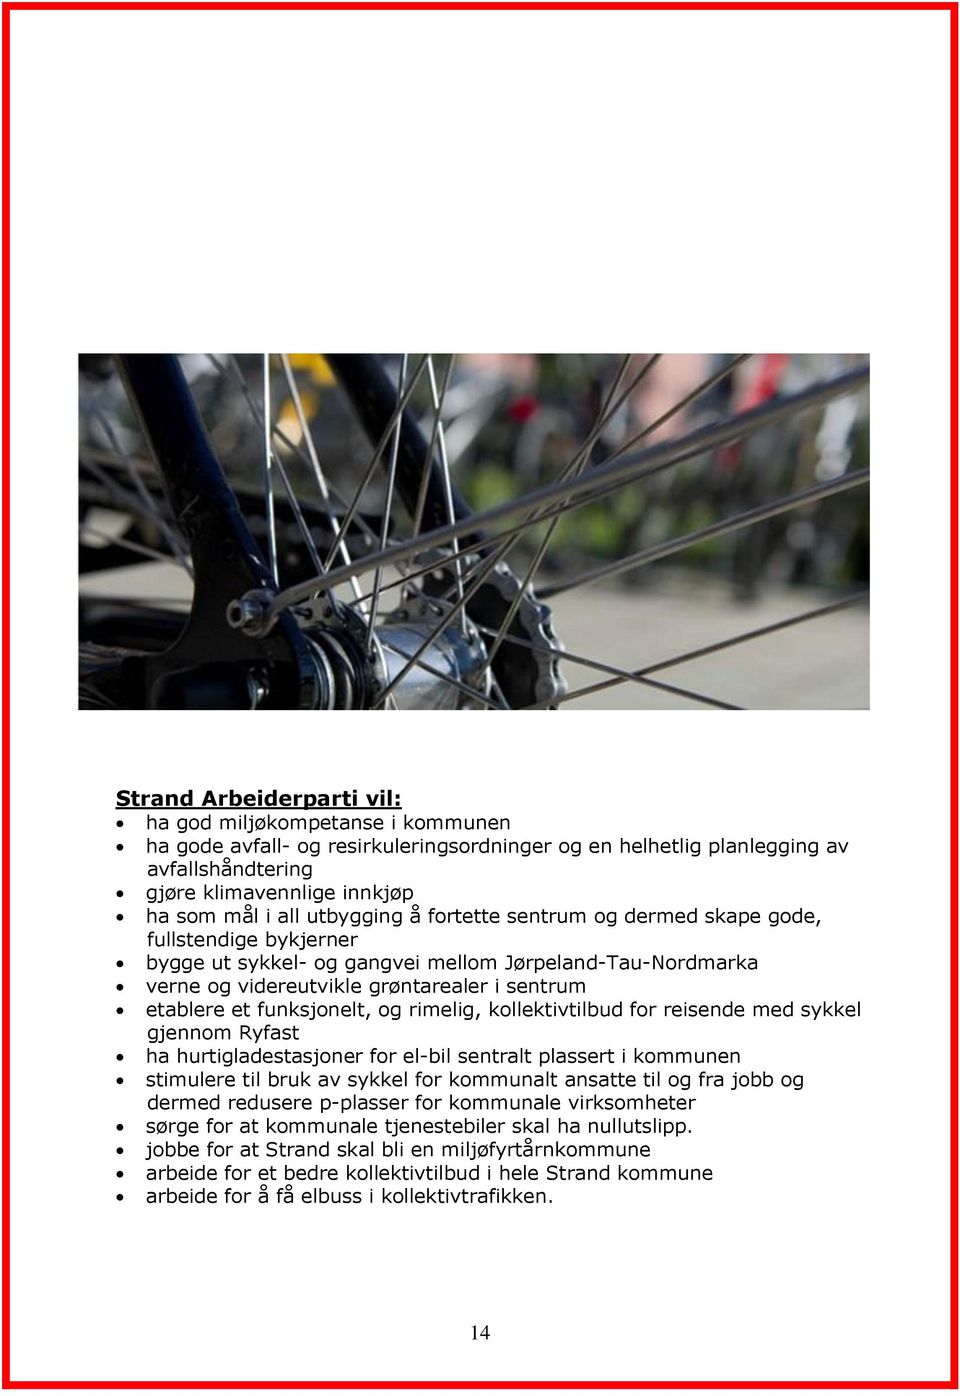 funksjonelt, og rimelig, kollektivtilbud for reisende med sykkel gjennom Ryfast ha hurtigladestasjoner for el-bil sentralt plassert i kommunen stimulere til bruk av sykkel for kommunalt ansatte til